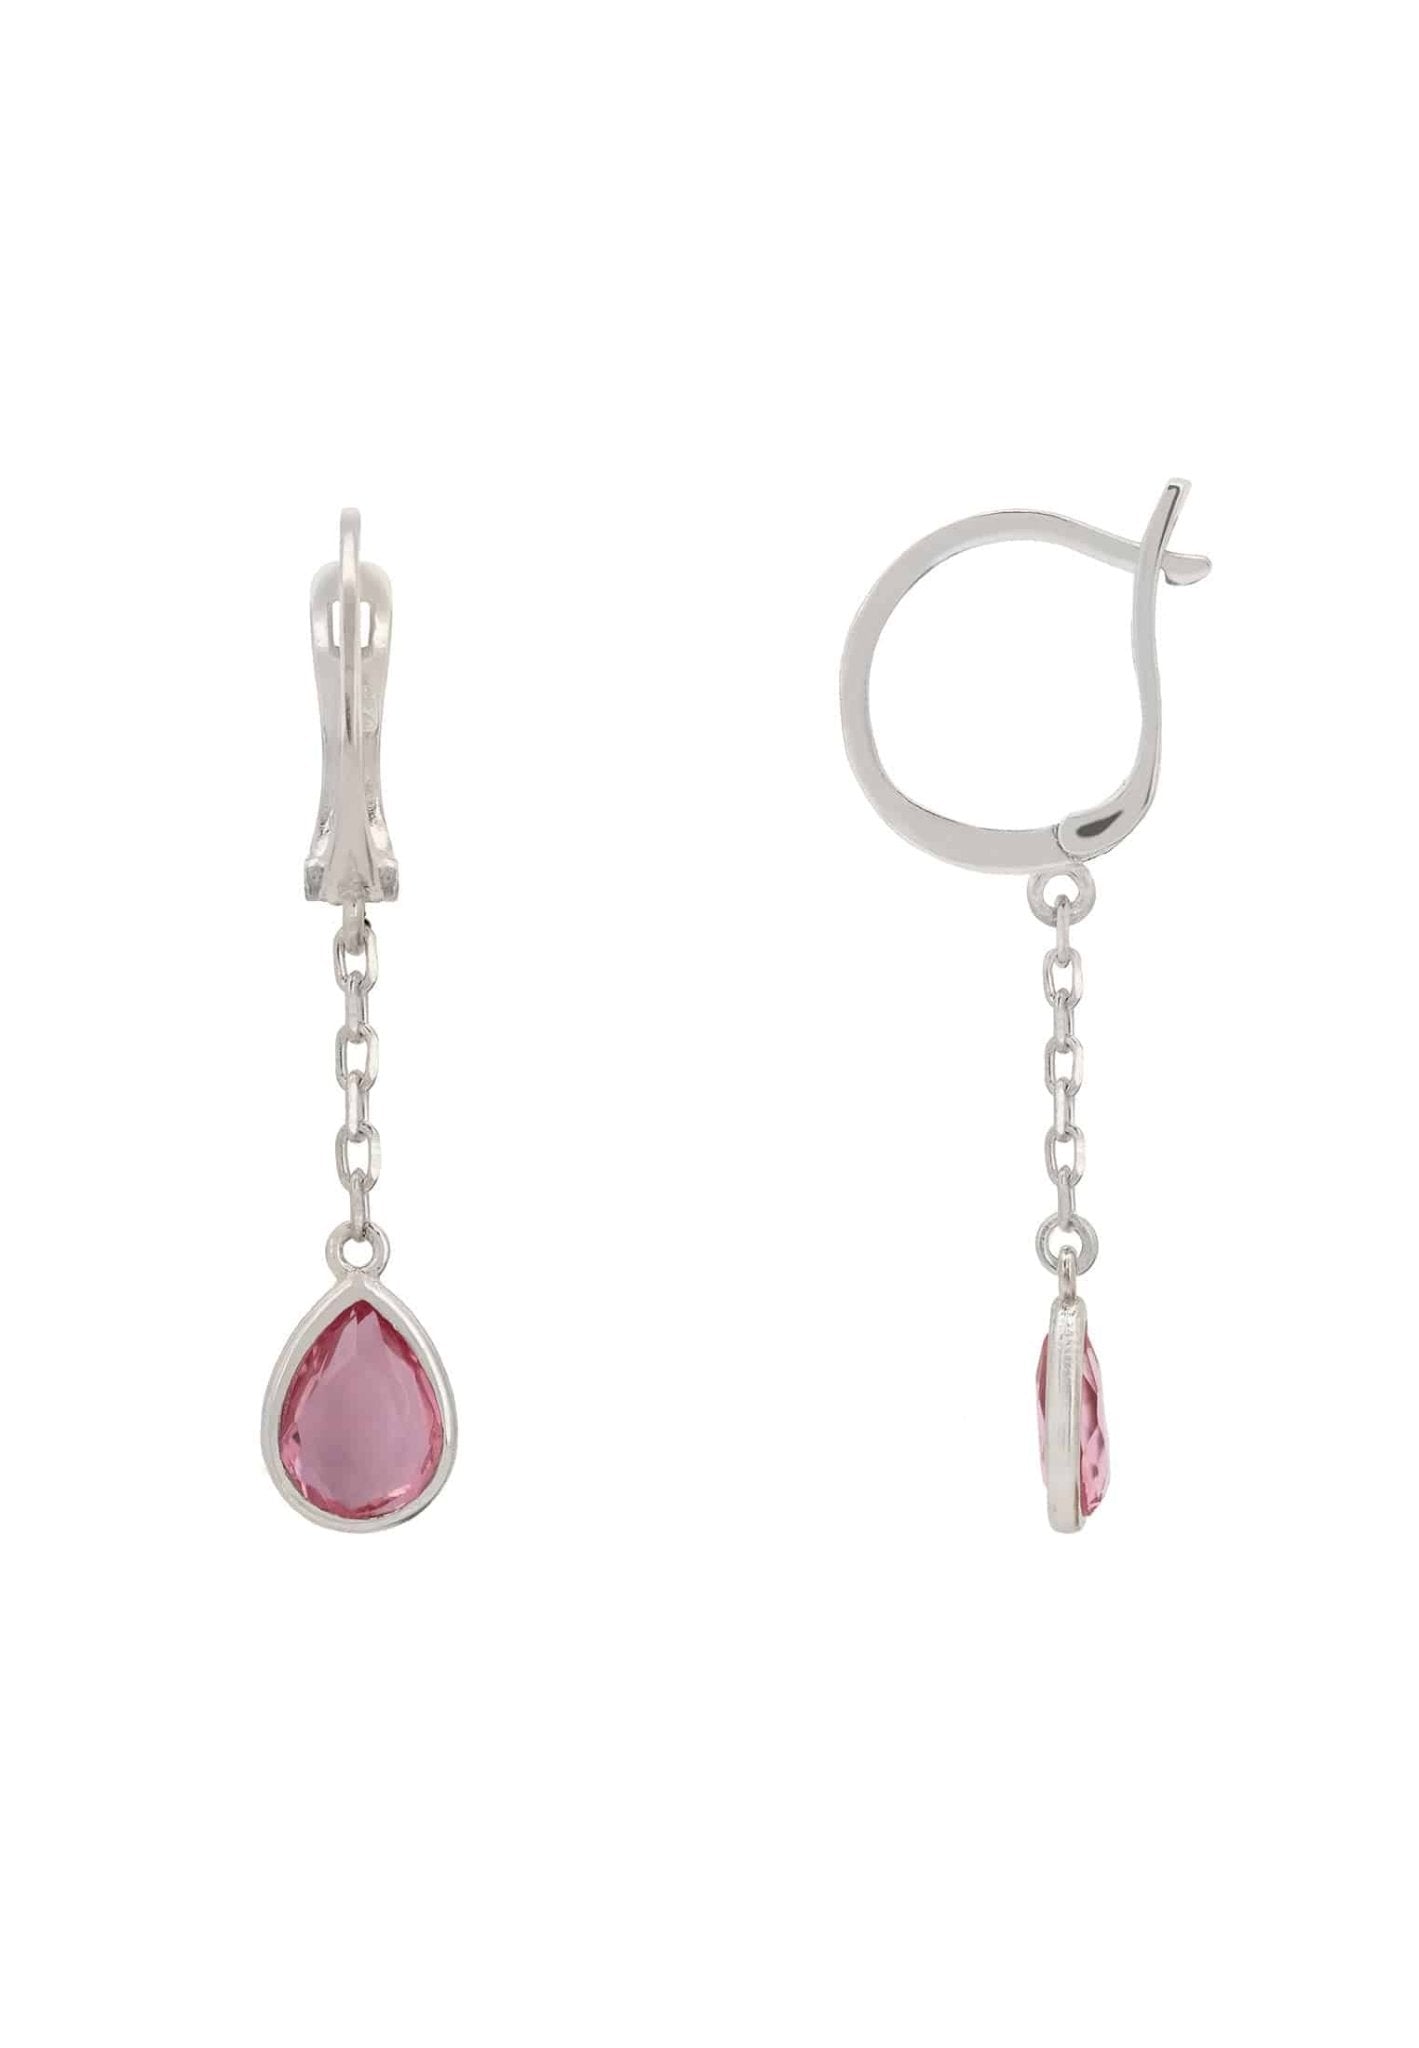 Pisa Chain Drop Earrings Silver Pink Tourmaline - LATELITA Earrings